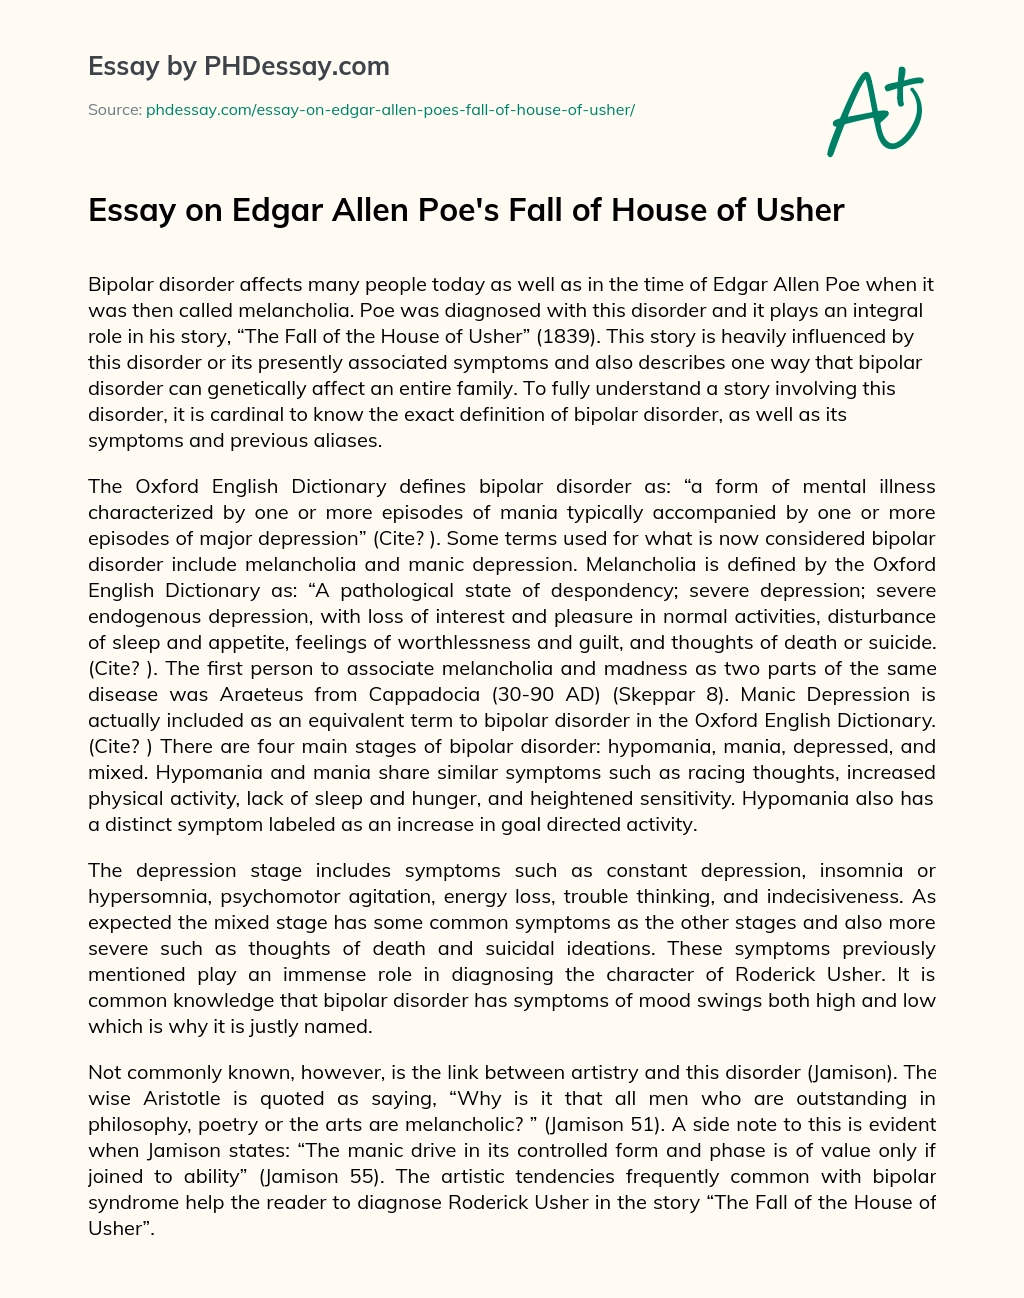 Essay on Edgar Allen Poe’s Fall of House of Usher essay